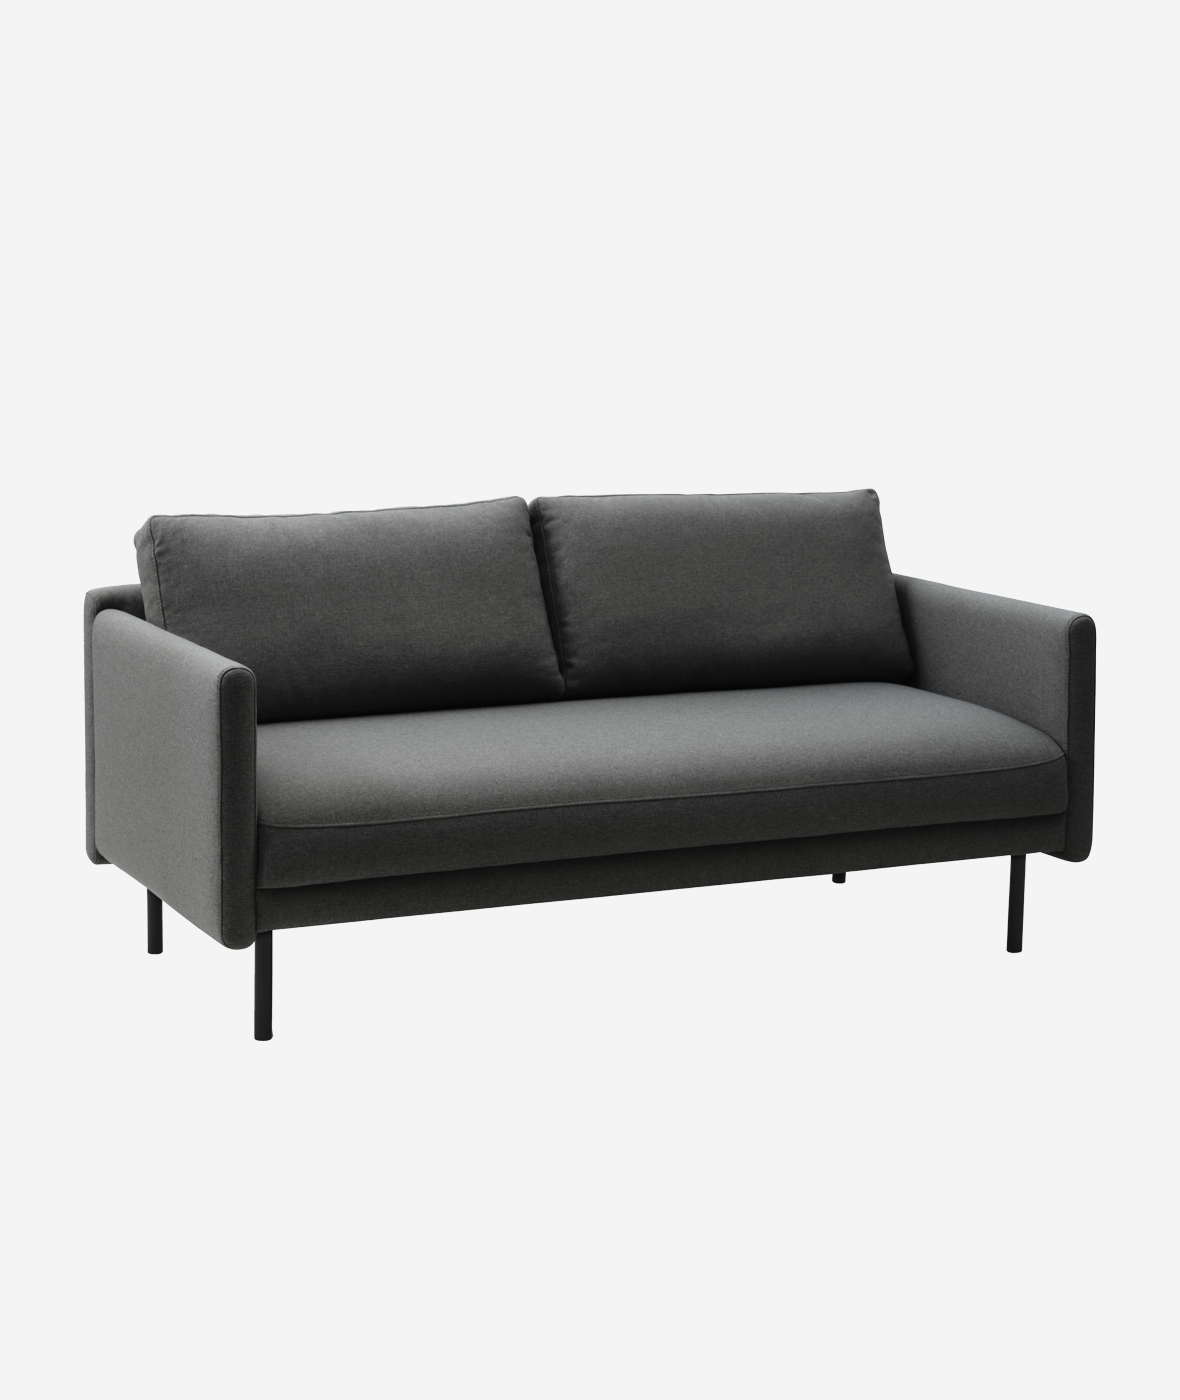 Rar Sofa - More Options